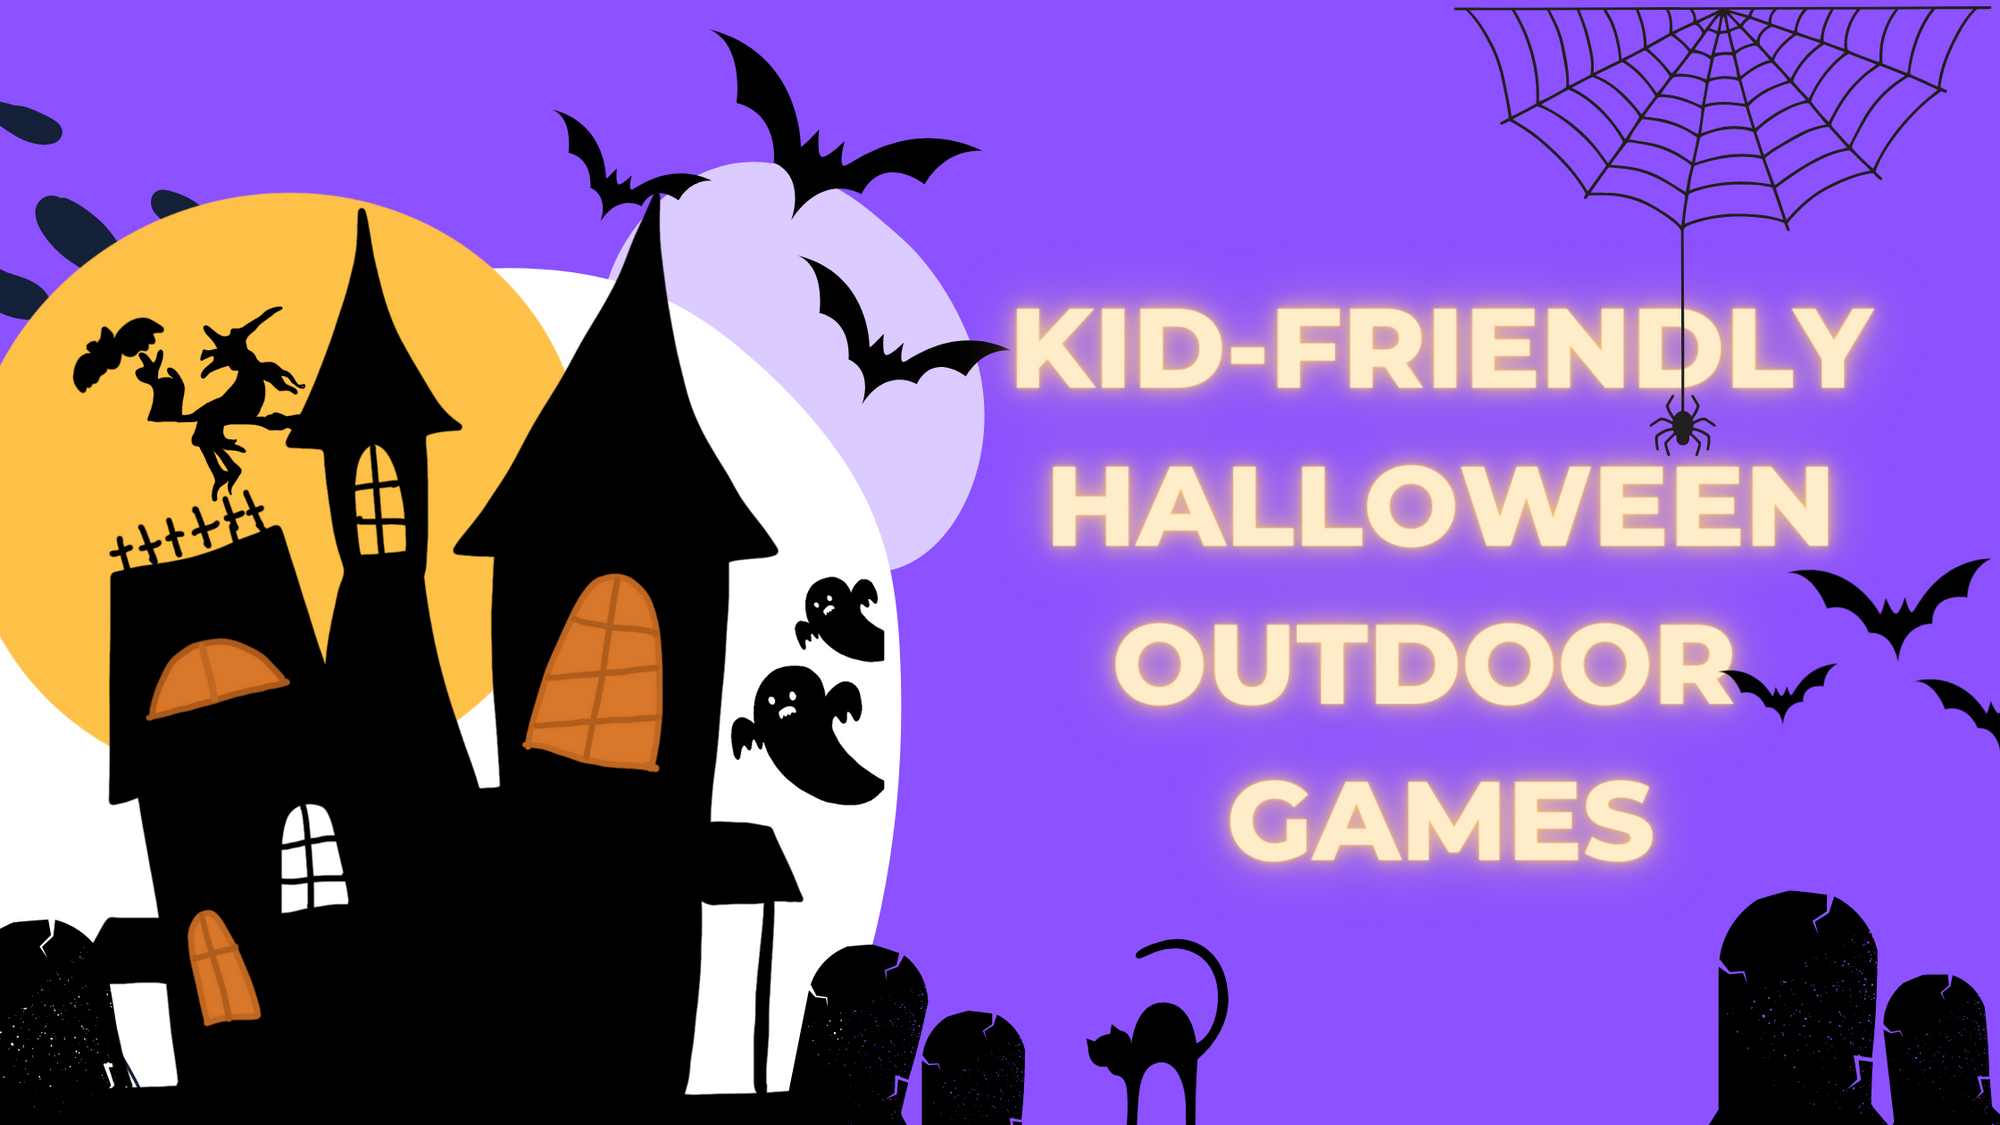 8 Kid-friendly Halloween outdoor games